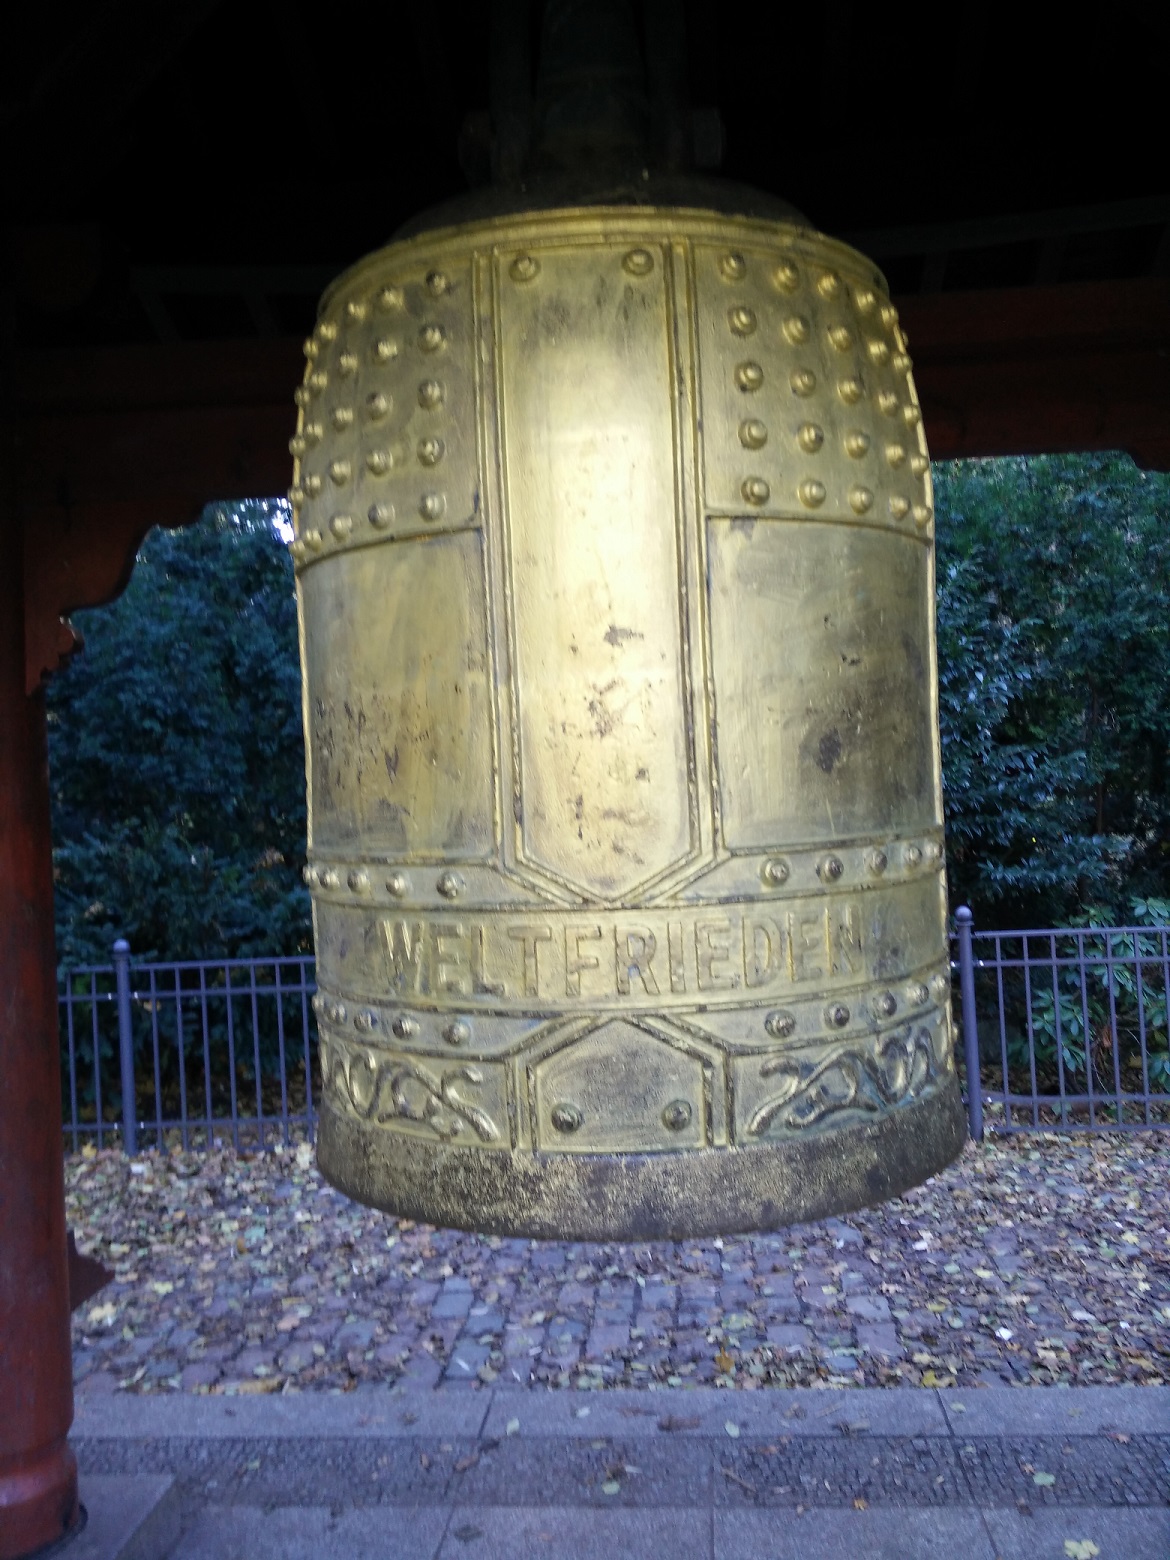 Blick auf die große goldfarbene Glocke mit der Inschrift "Weltfrieden".